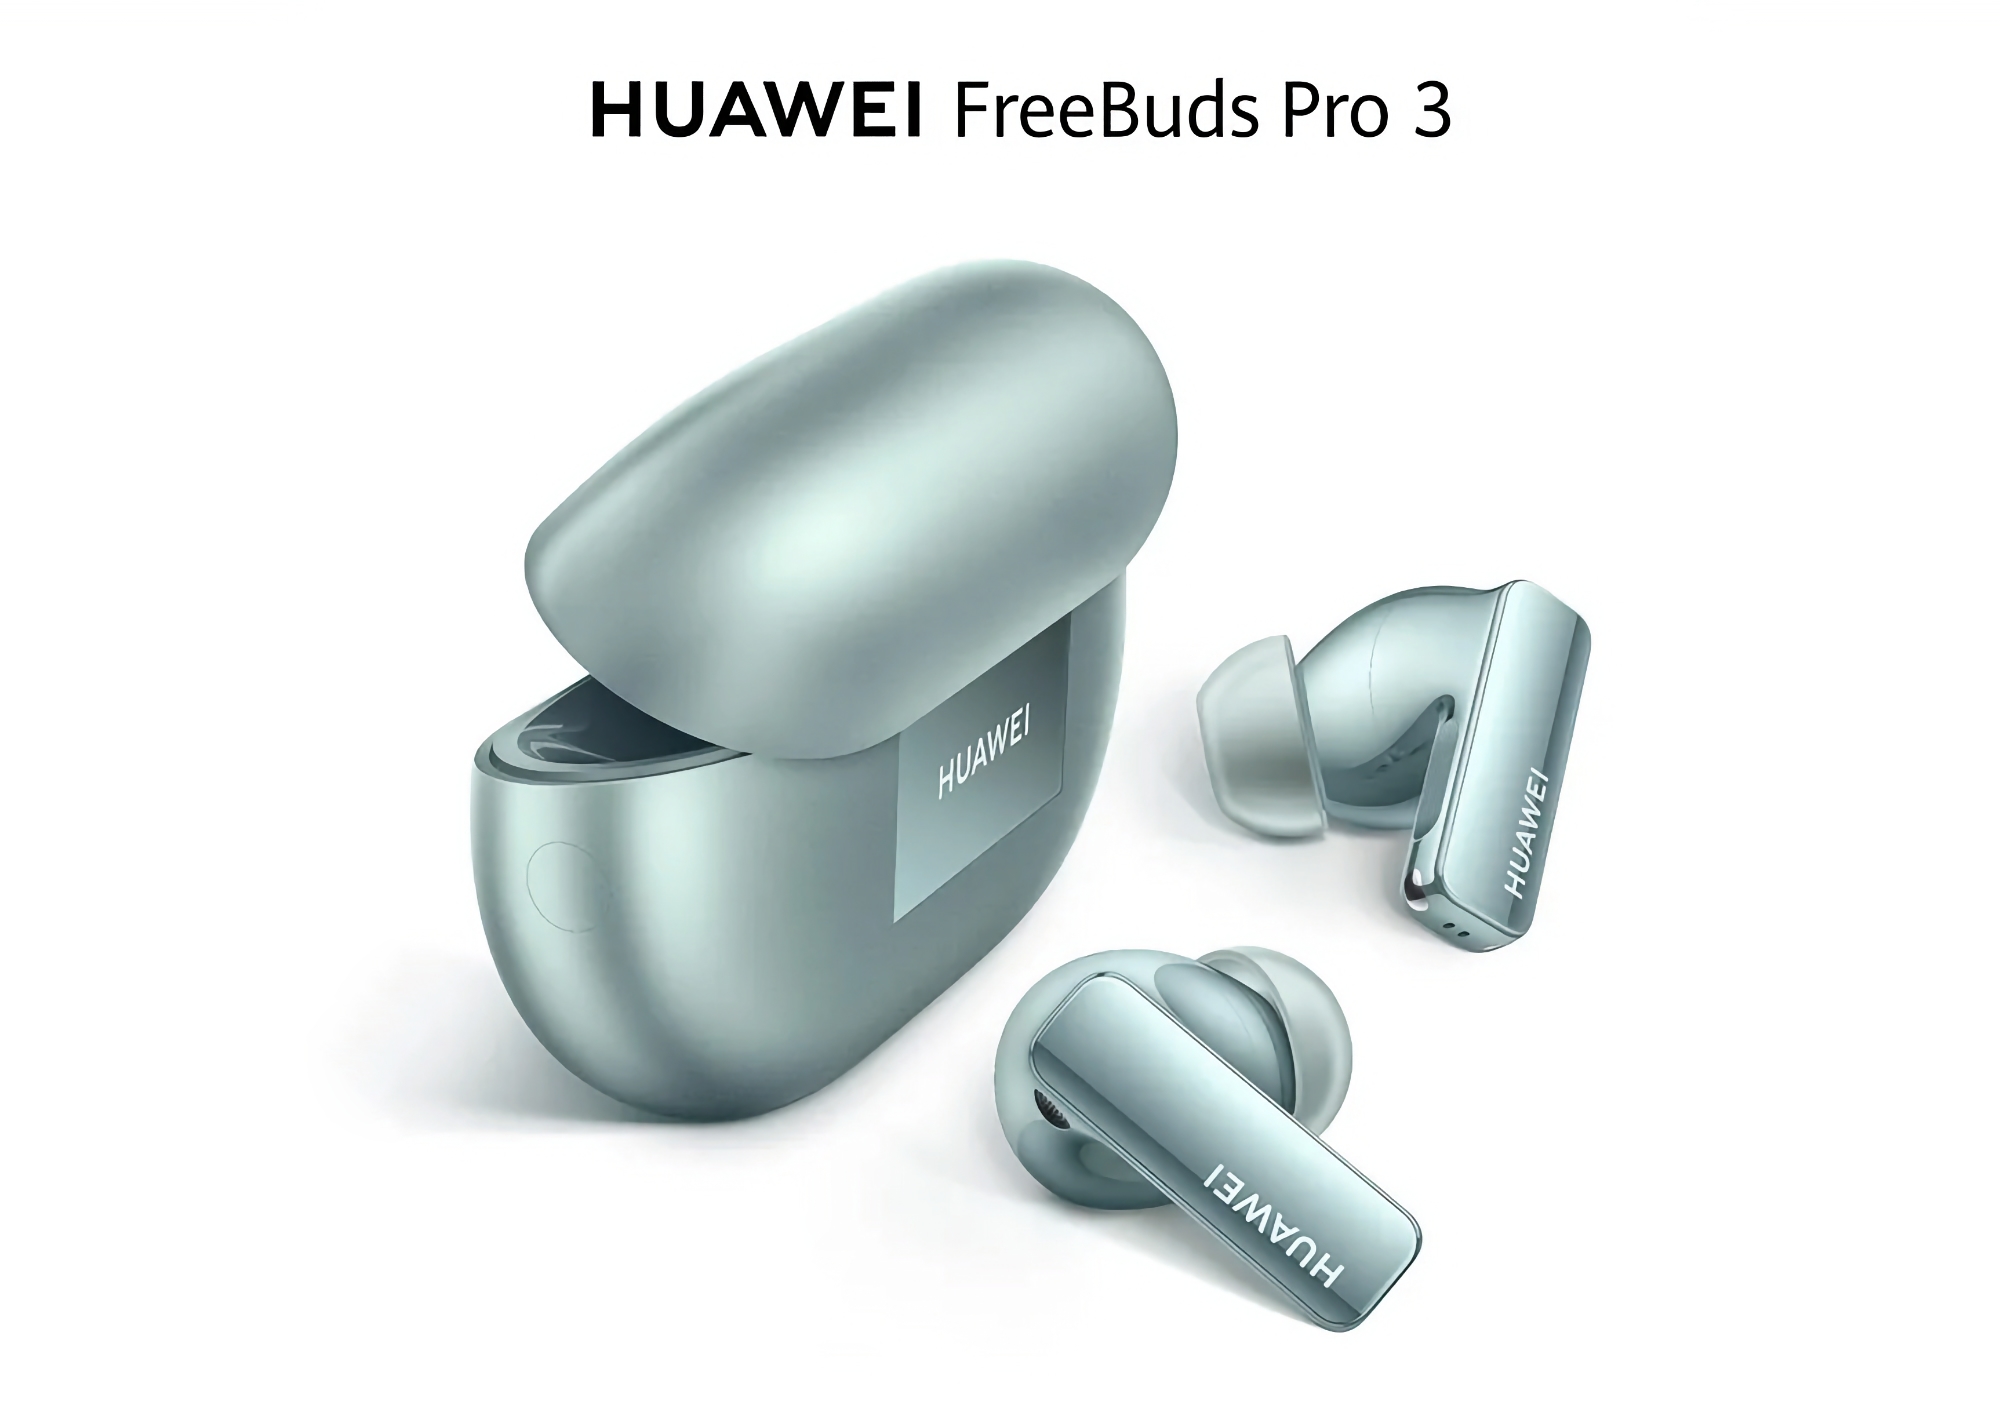 Huawei FreeBuds Pro 3 disponibles en Amazon con un descuento de 20 euros